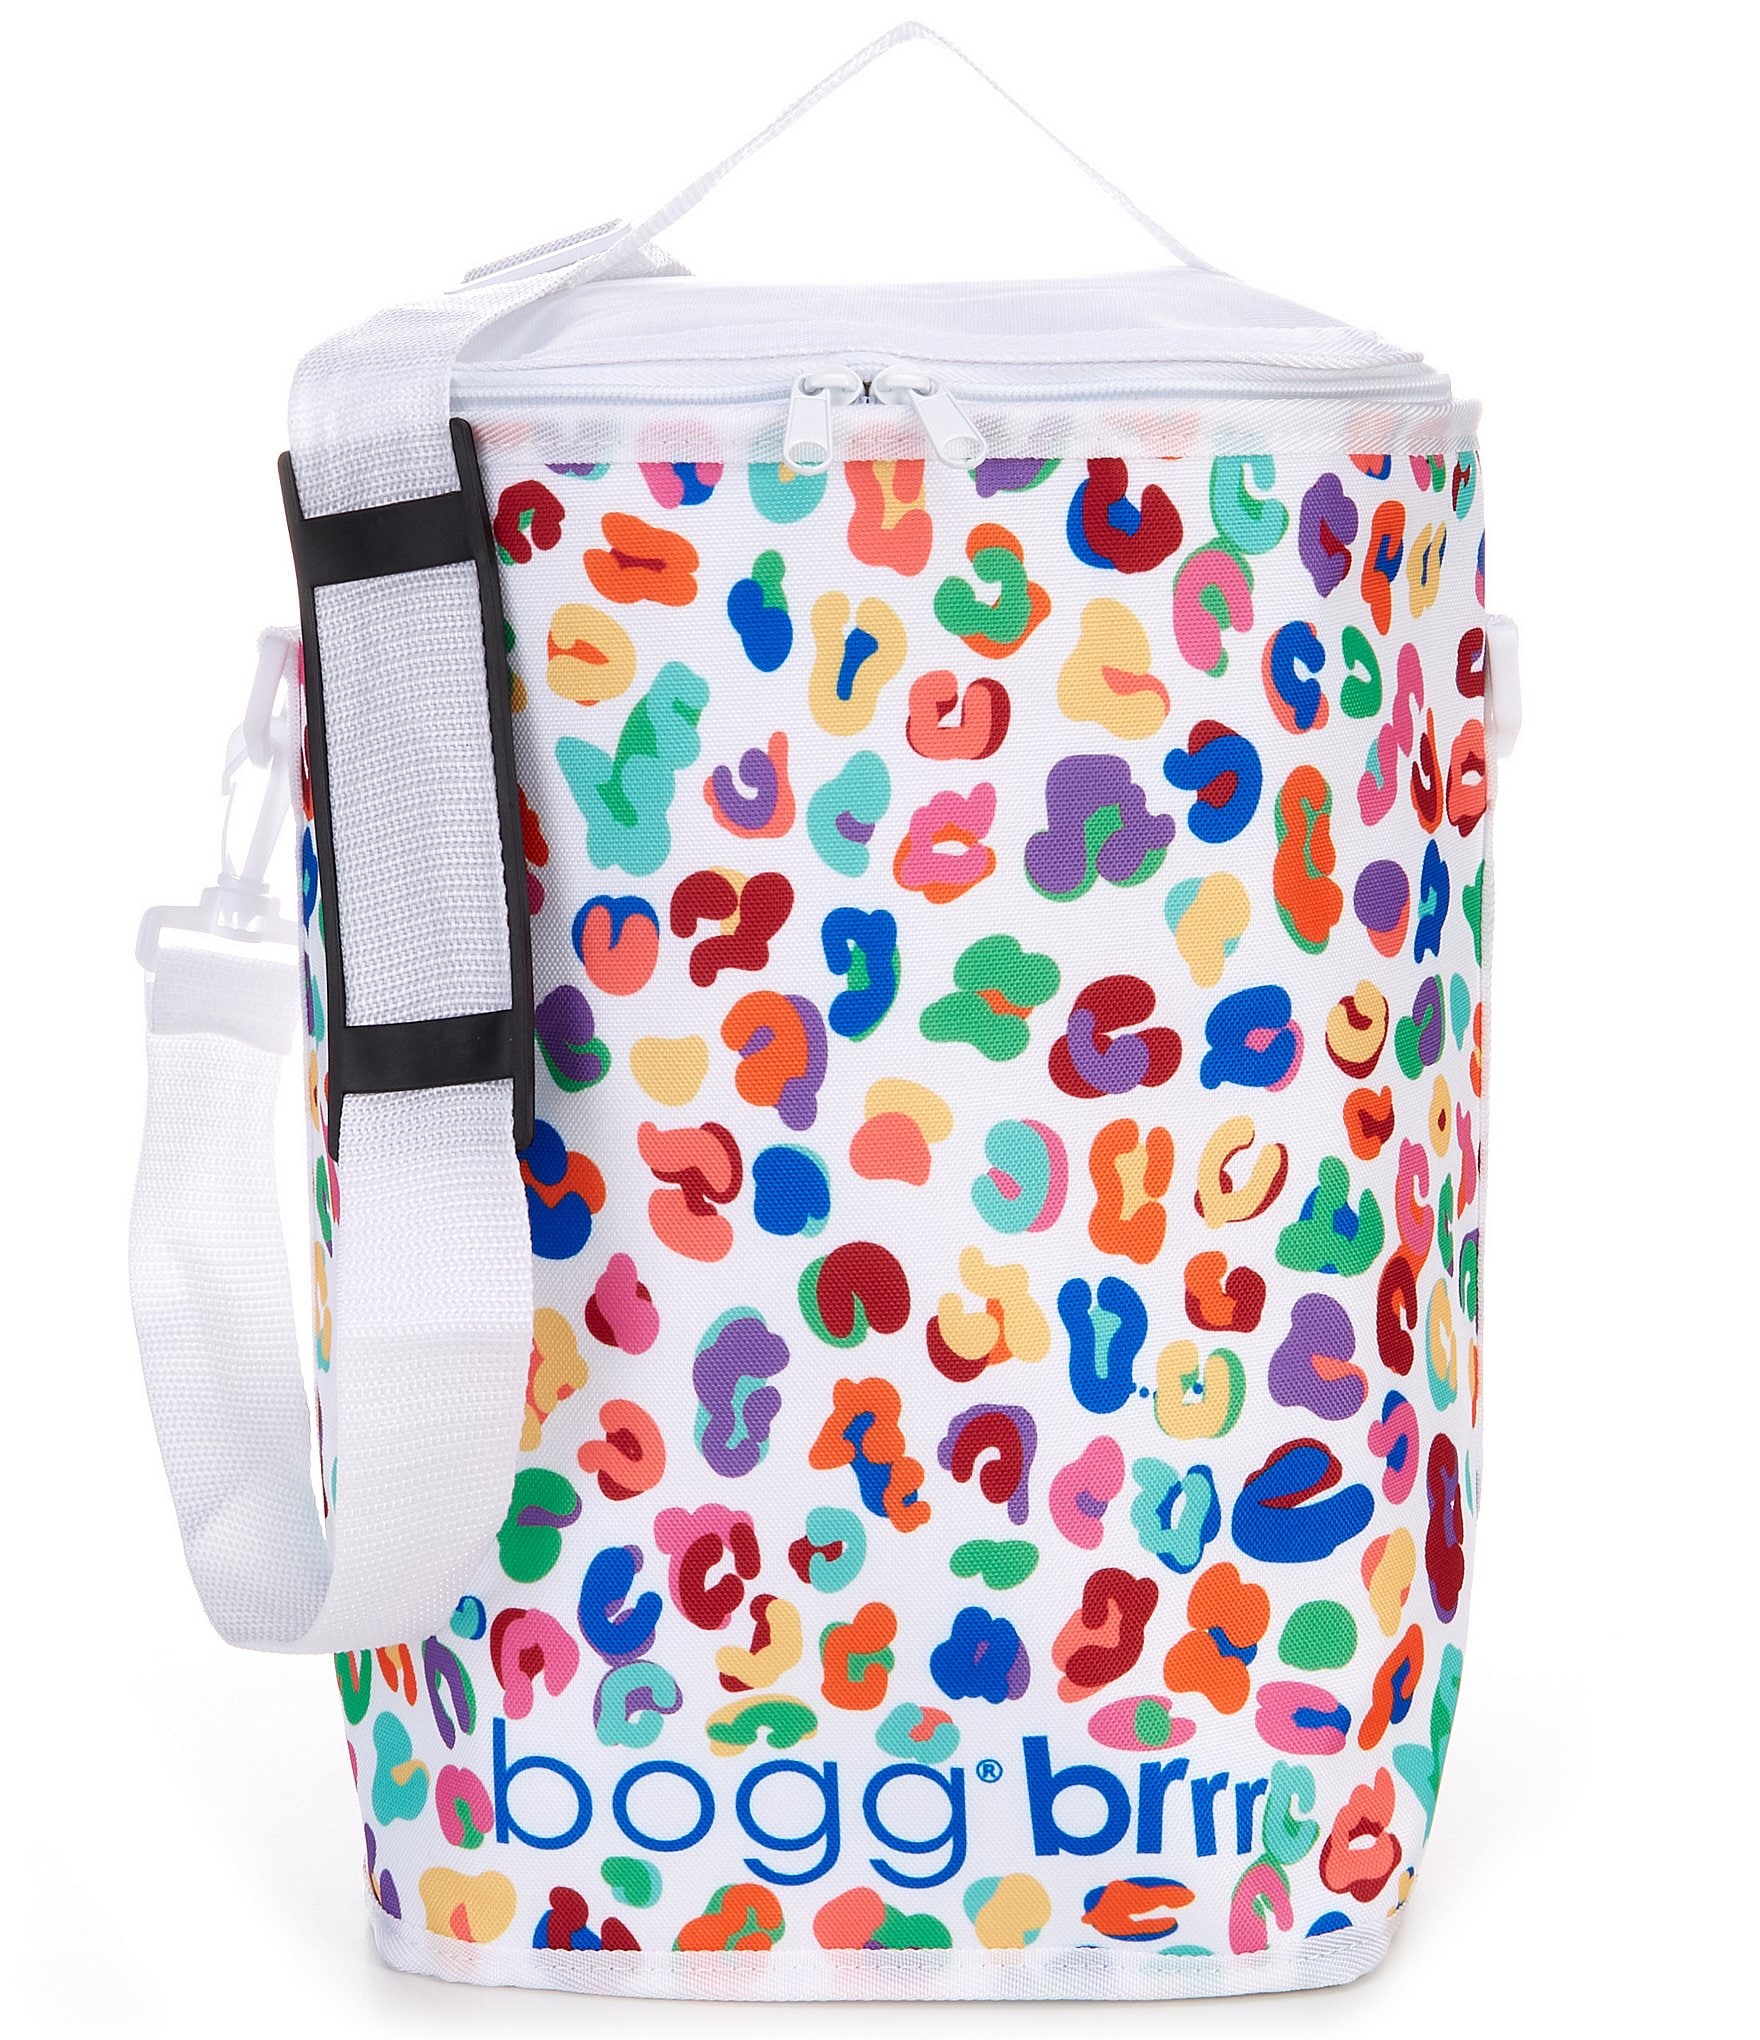 Bogg Bag Brrr Cooler Inserts, Brrr and A Half / Palm